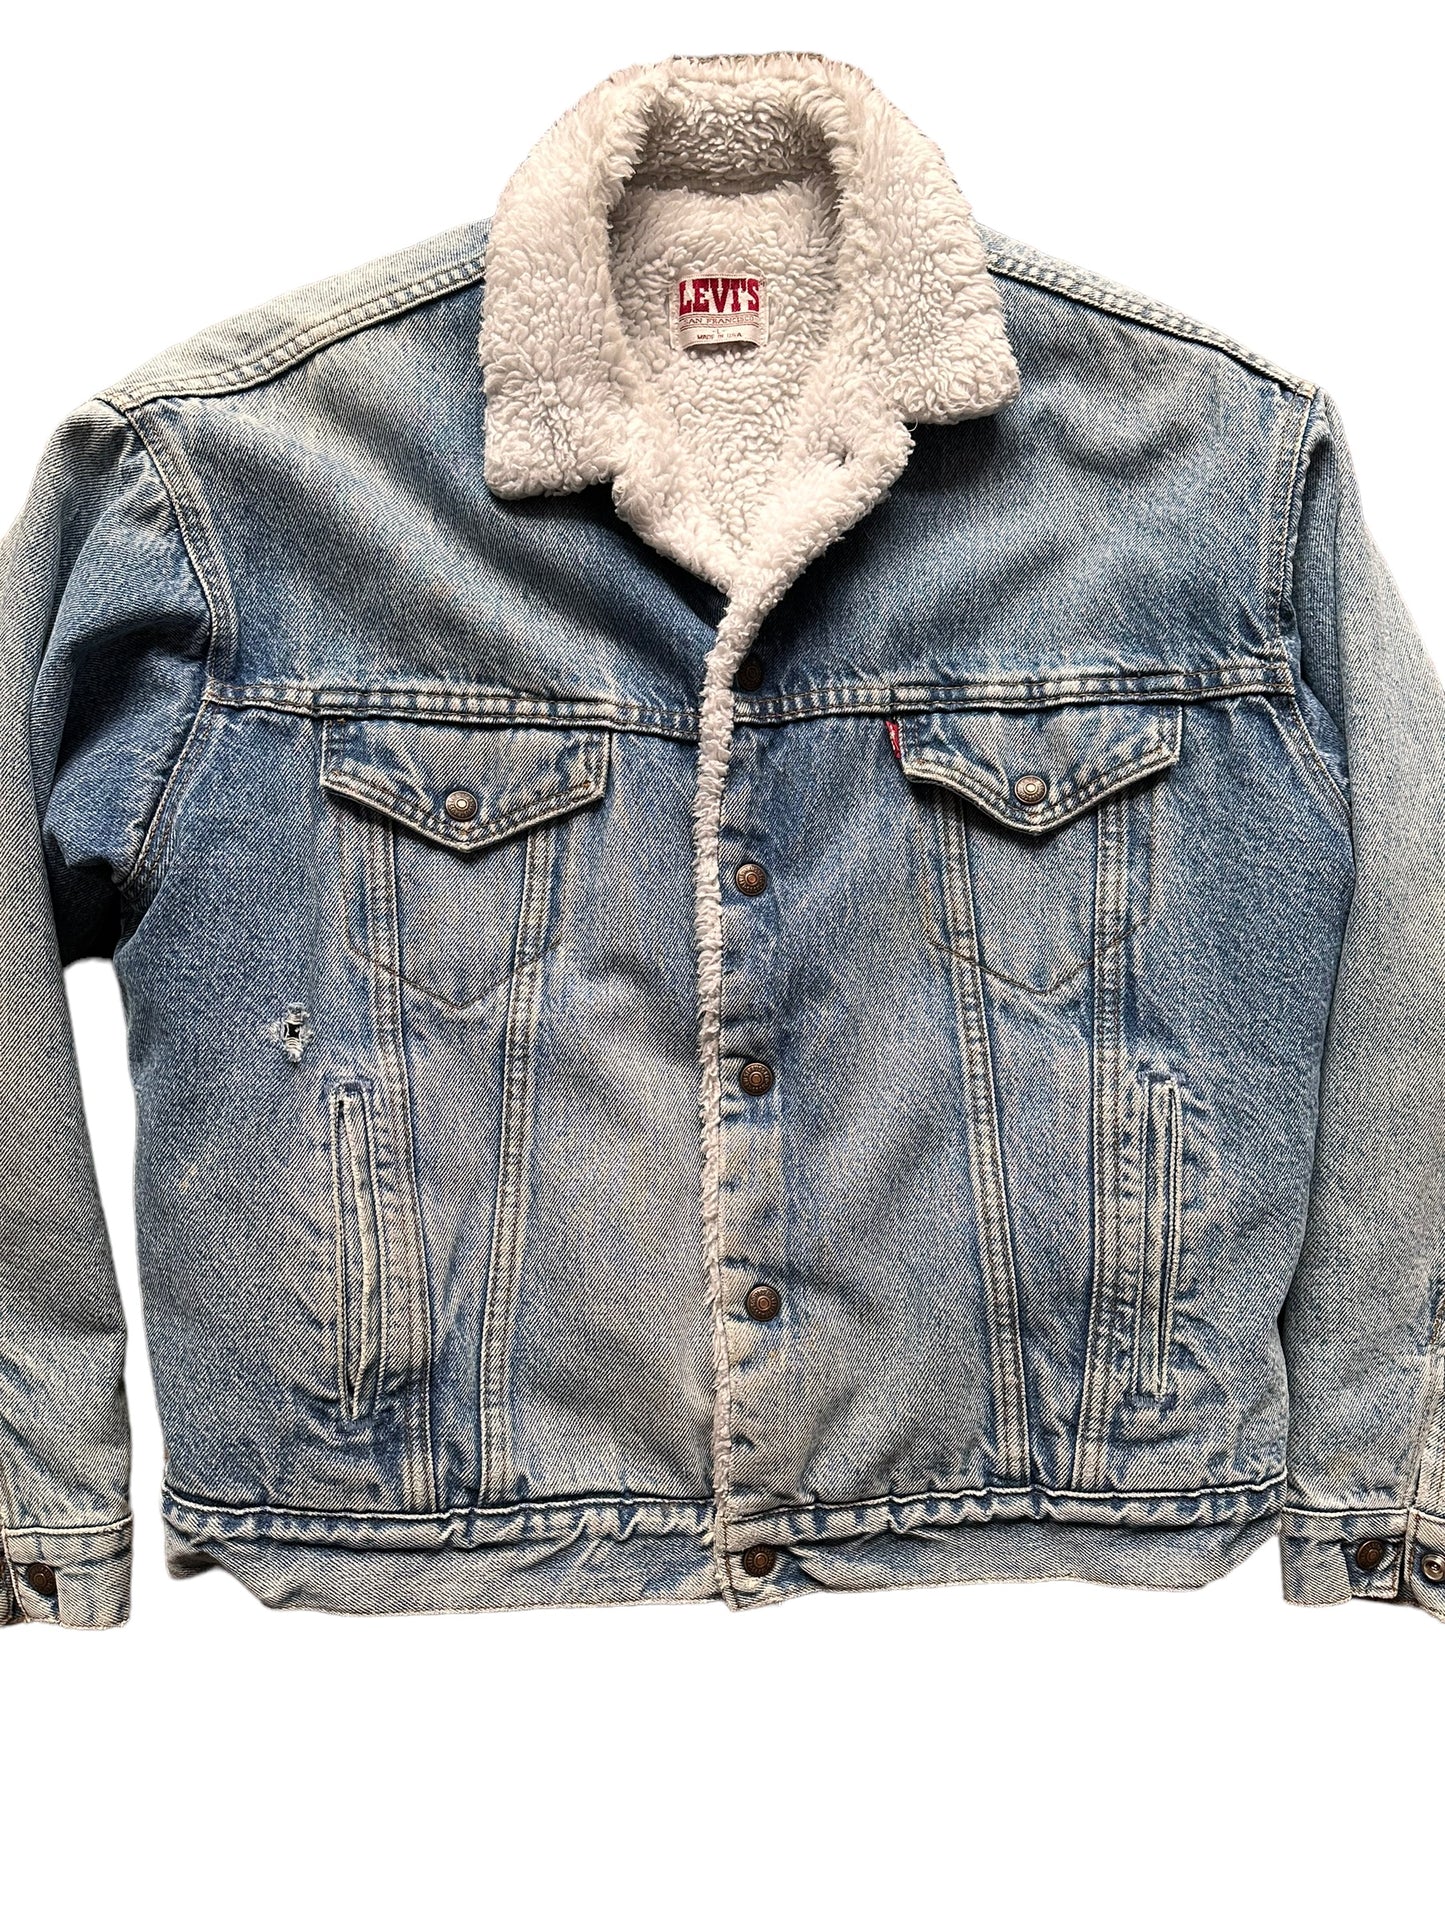 Front Detail on Vintage Levis Sherpa Type III Denim Jacket SZ L | Vintage Denim Workwear Seattle | Barn Owl Seattle